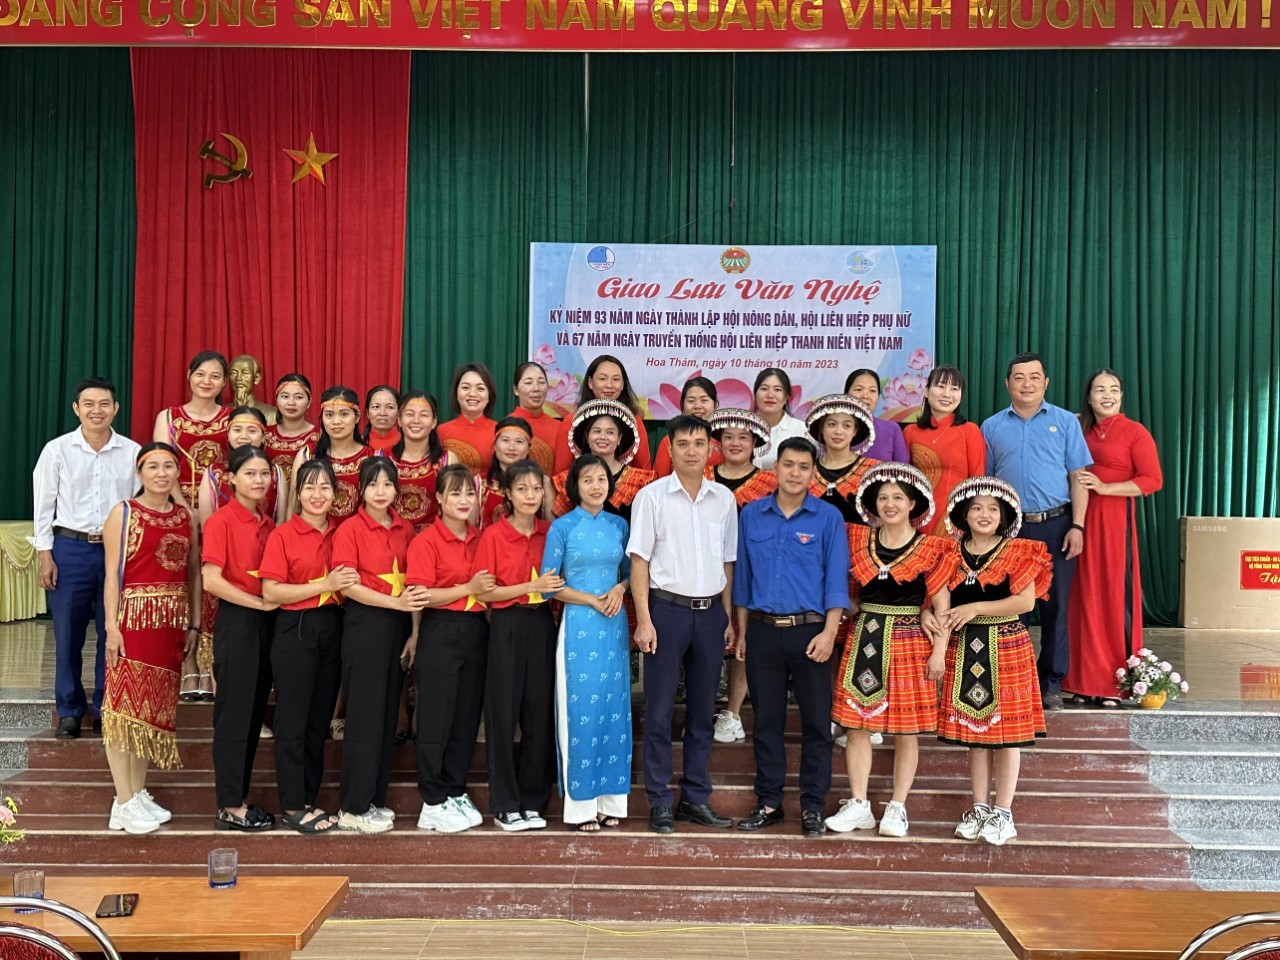 Các cấp Hội Nông dân huyện Nguyên Bình tổ chức các hoạt động tuyên truyền, kỷ niệm 93 năm ngày thành lập Hội Nông dân Việt Nam (14/10/1930 -14/10/2023)